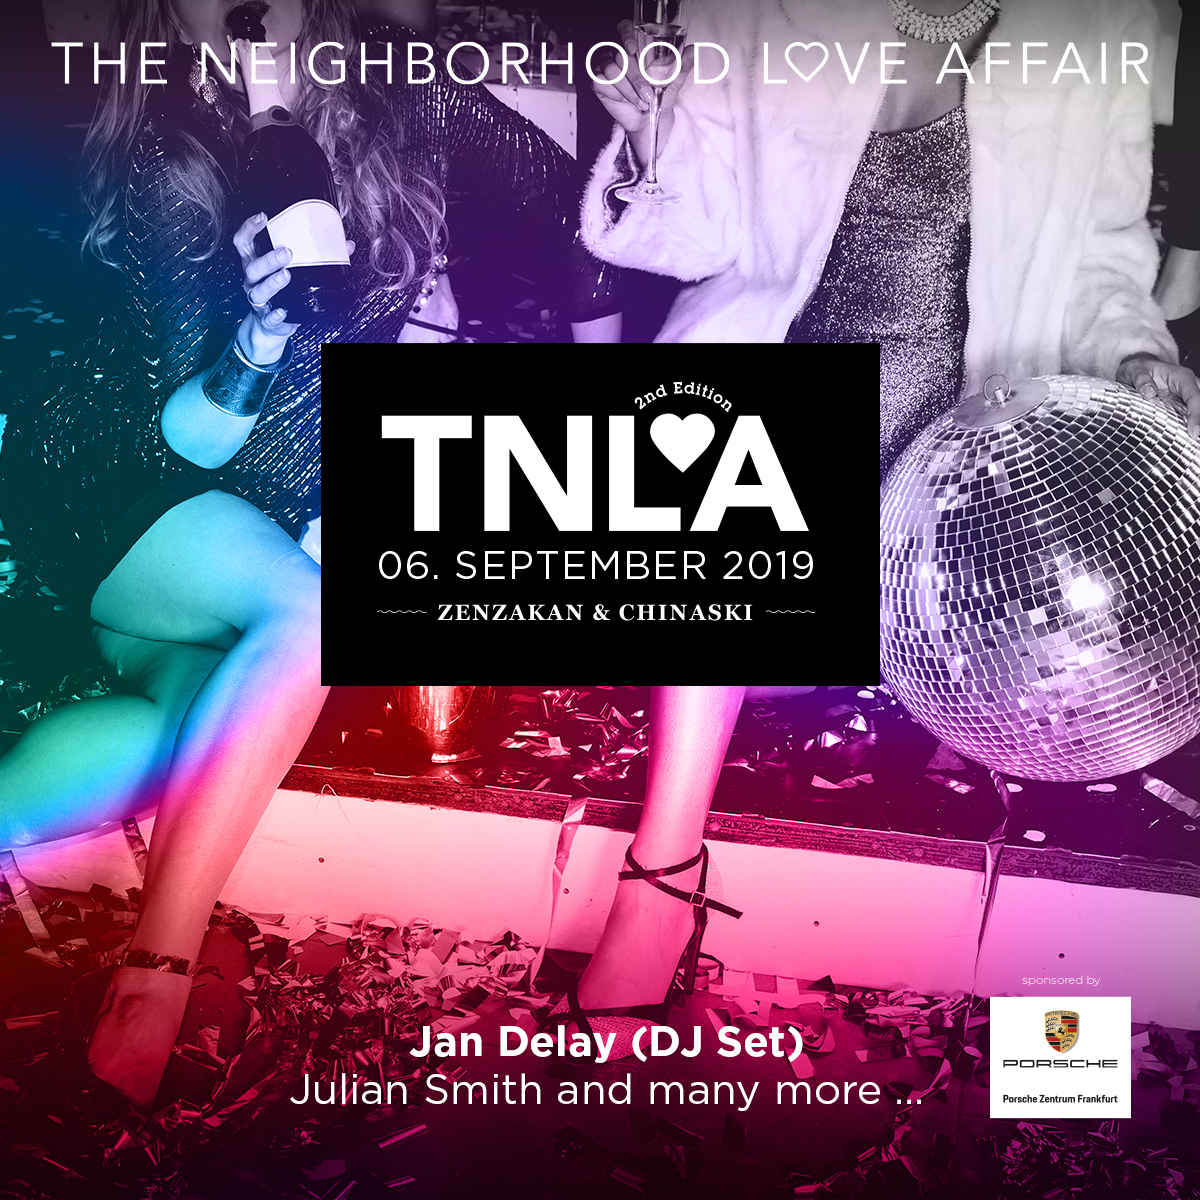 TNLA 06. September 2019